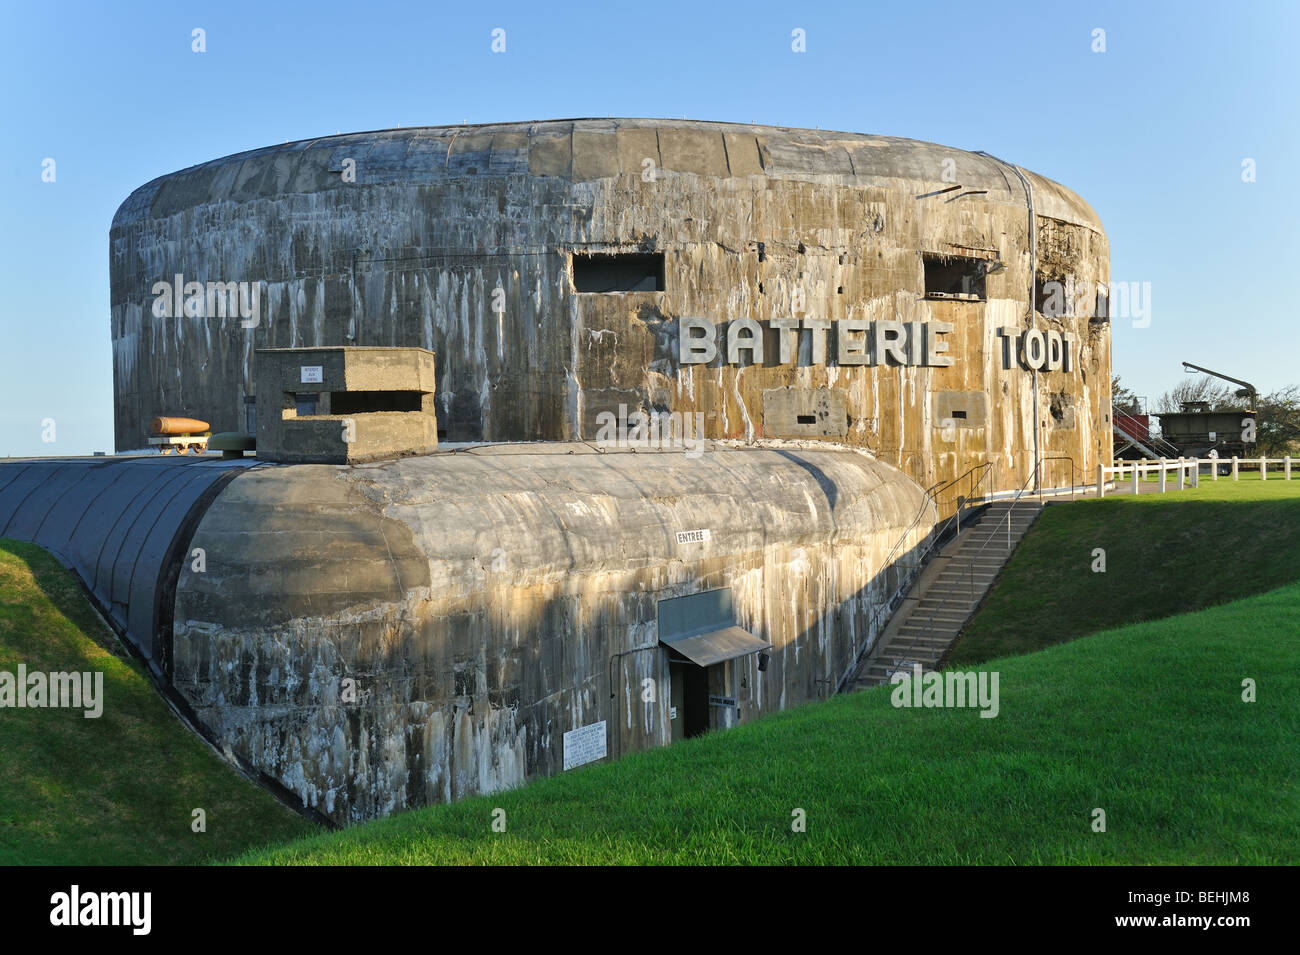 Musée du Mur de l'Atlantique de la Seconde Guerre mondiale Seconde Guerre mondiale avec deux bunker batterie Todt, Audinghen, Côte d'Opale, France Banque D'Images